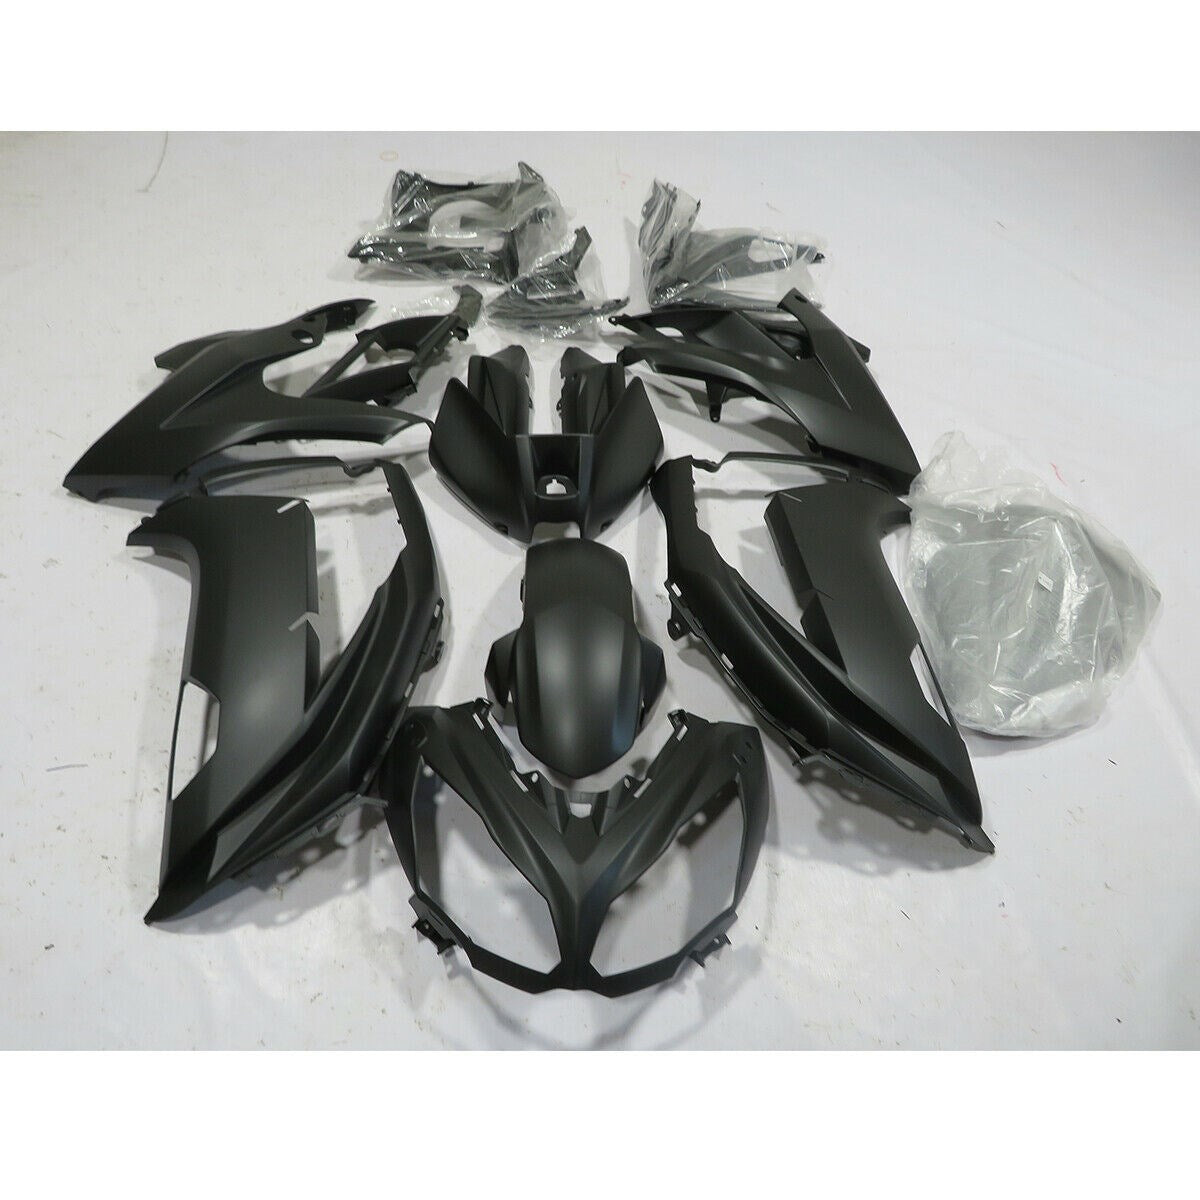 Amotopart Kit de carenado de inyección de plástico para Kawasaki Ninja 650 EX650 2012-2016 negro genérico